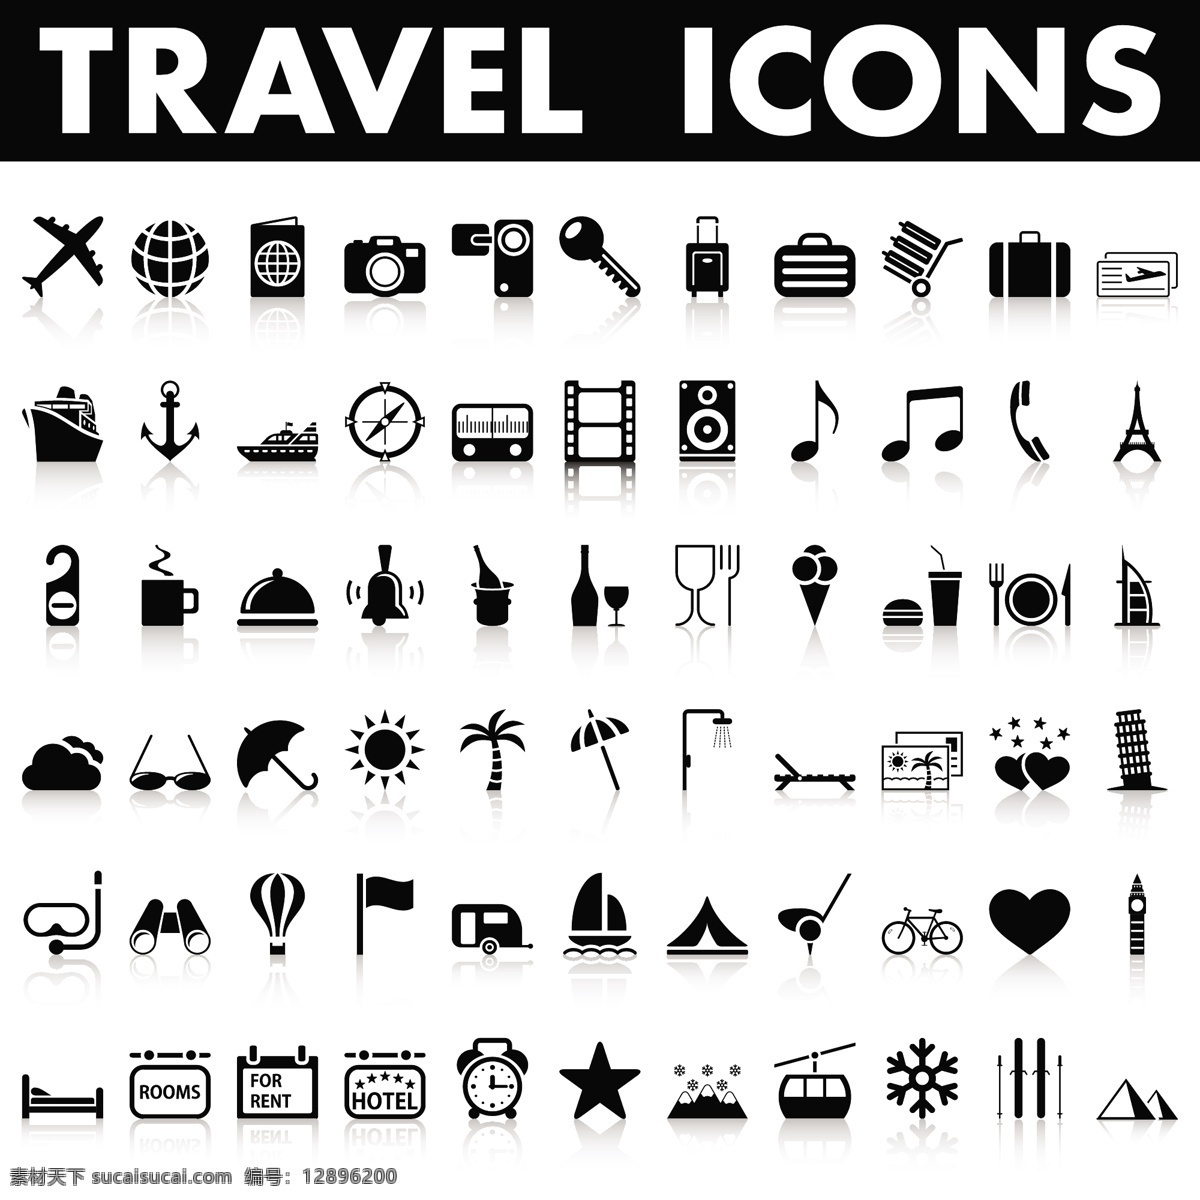 世界旅游设计 旅游 旅游广告 世界旅游 世界游 环球游 出国游 旅游图标 旅游标志 国际游 旅游设计